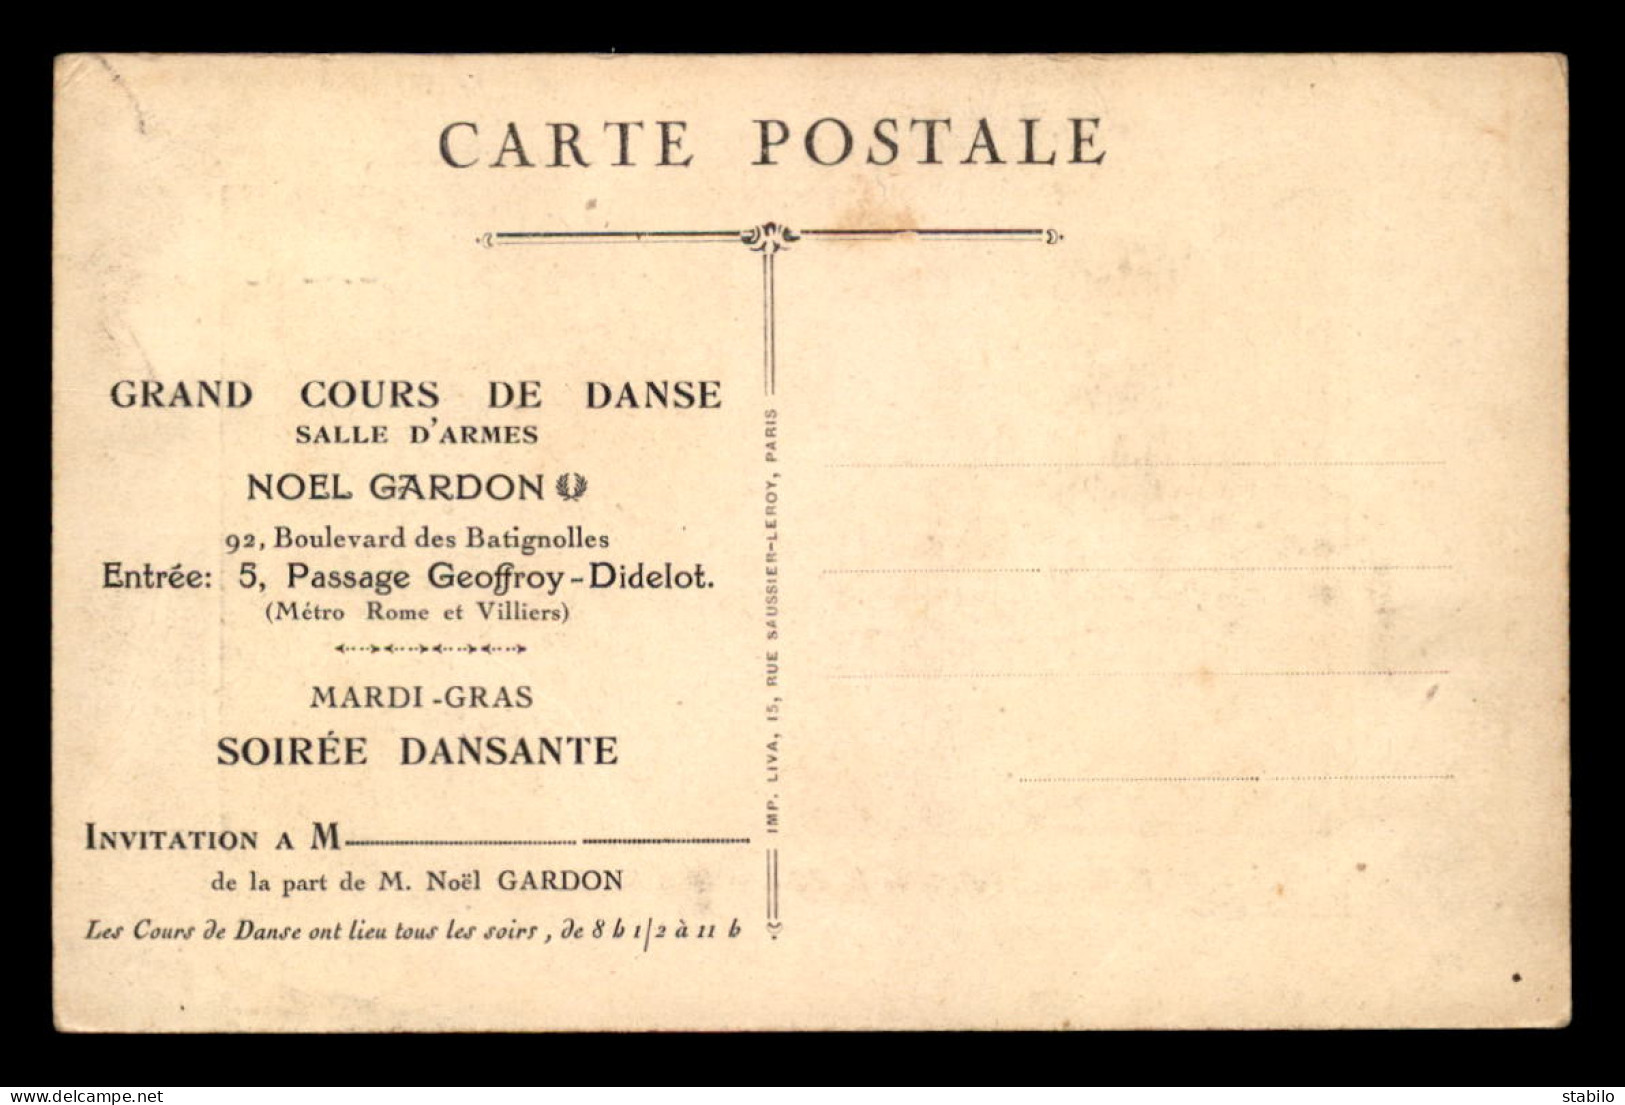 75 - PARIS 17EME - INVITATION AU GRAND CONCOURS DE DANSE SALLE D'ARMES NOEL GARDON, 92 BOULEVARD DES BATIGNOLLES  - Arrondissement: 17